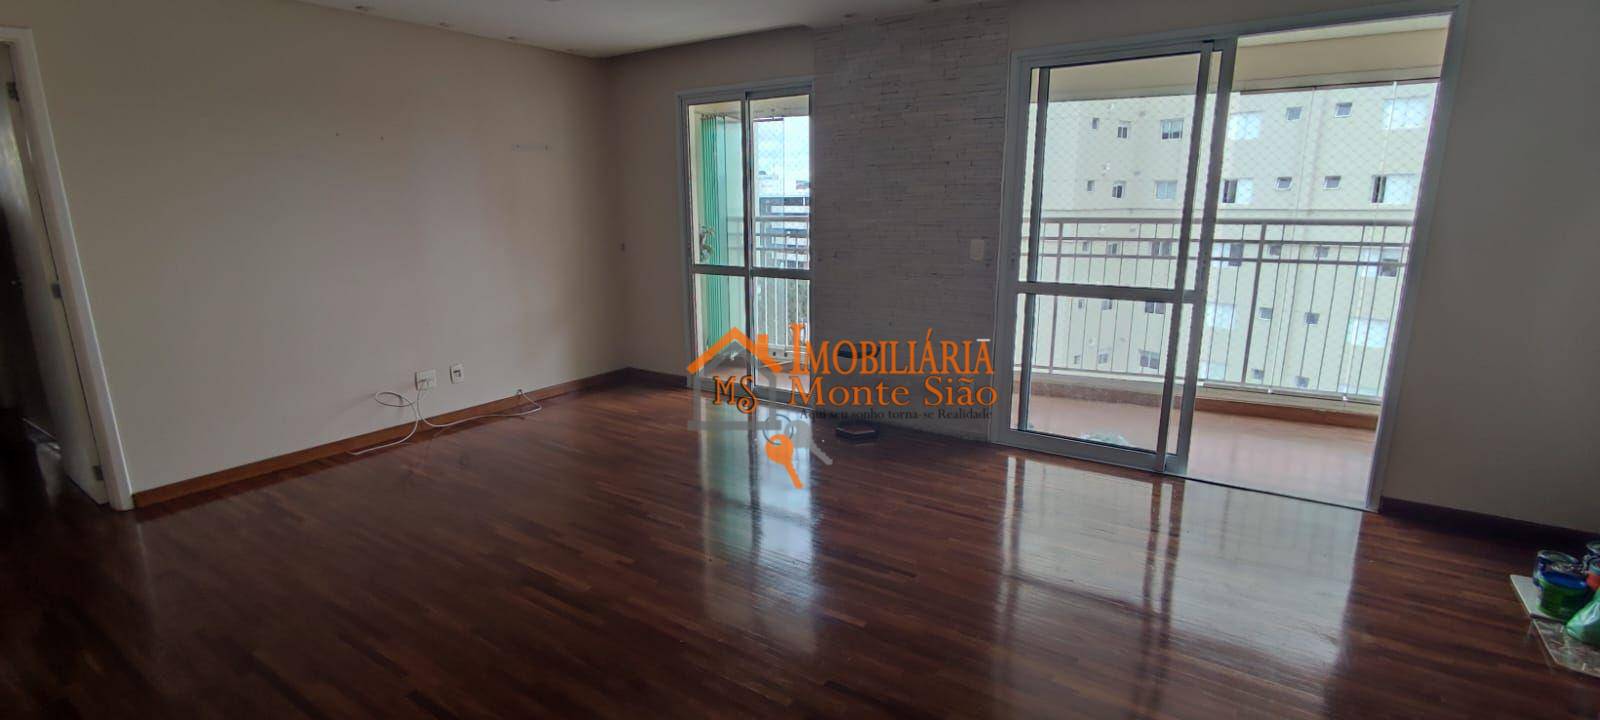 Apartamento com 3 dormitórios à venda, 111 m² por R$ 950.000,00 - Vila Progresso - Guarulhos/SP